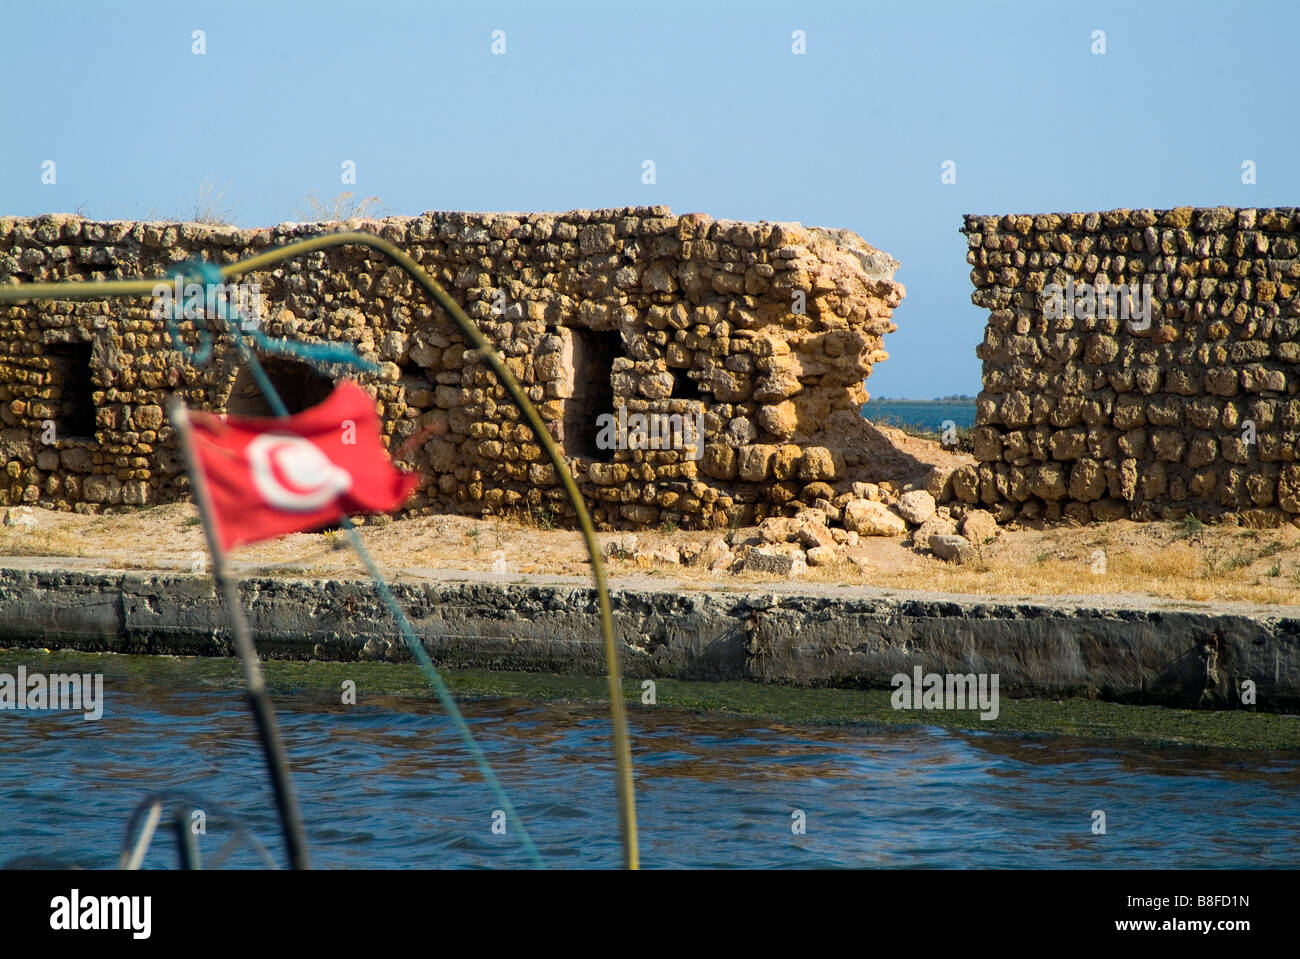 porto farina - ghar el melh - tunisia Stock Photo